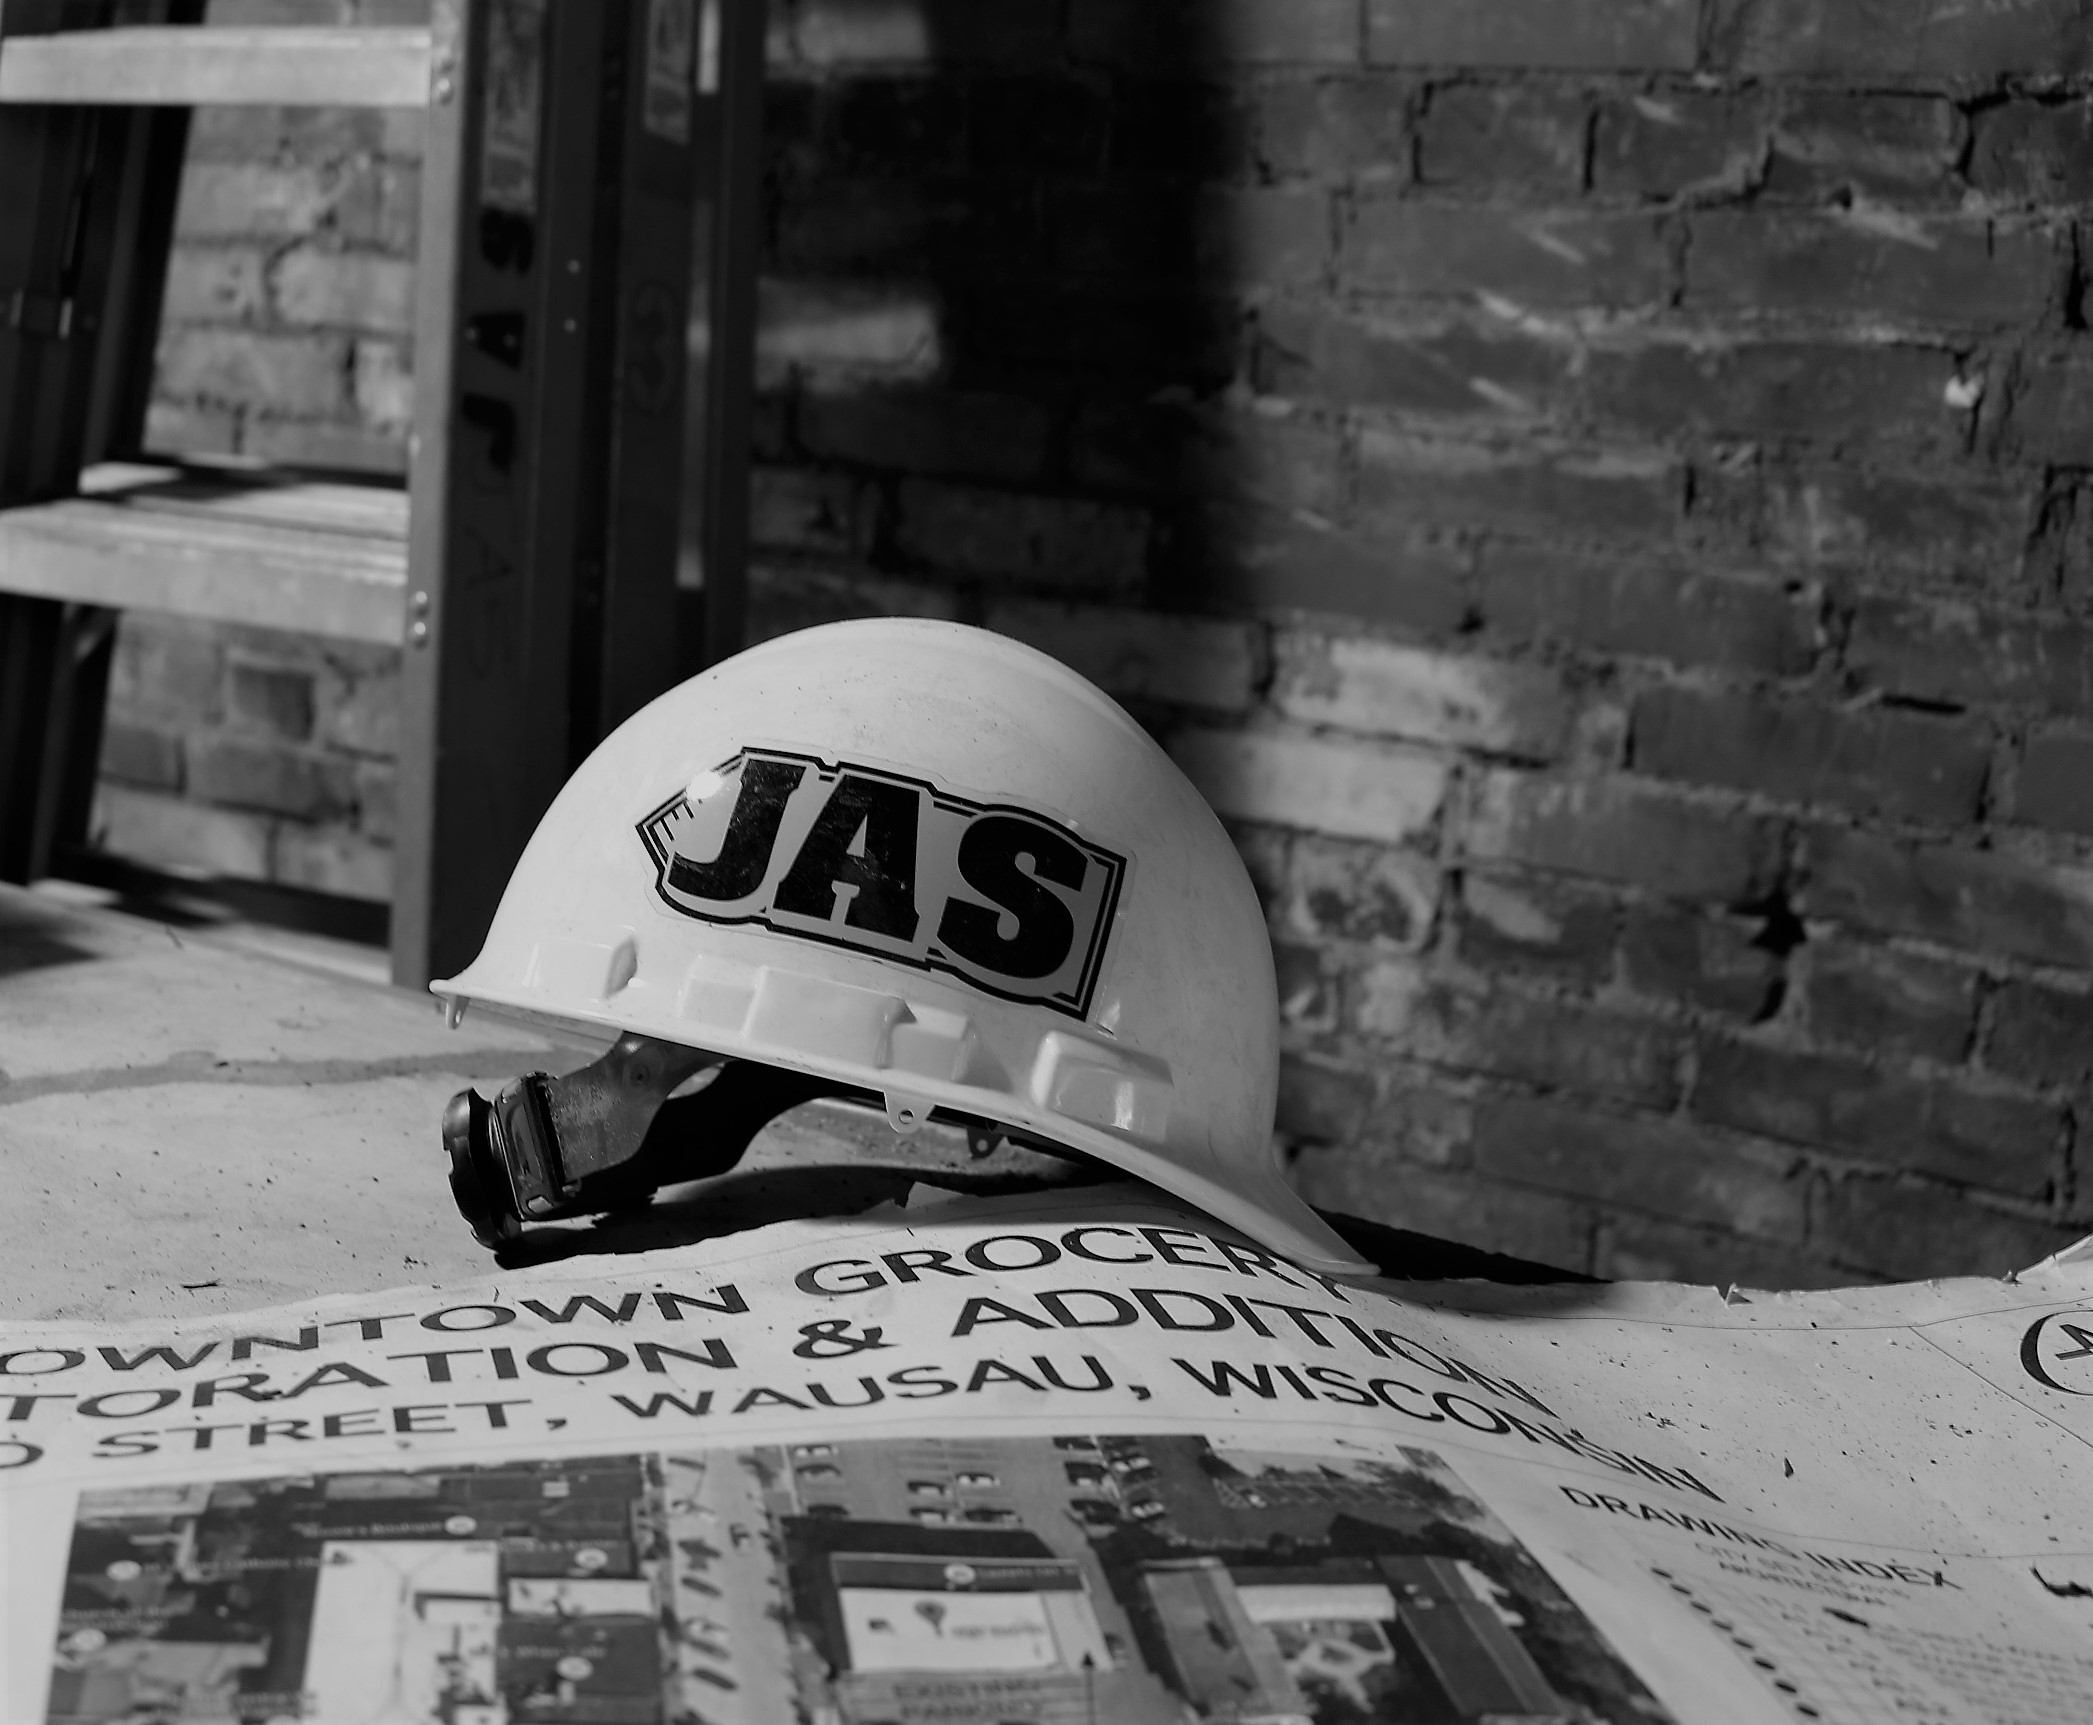 Jas Construction plans